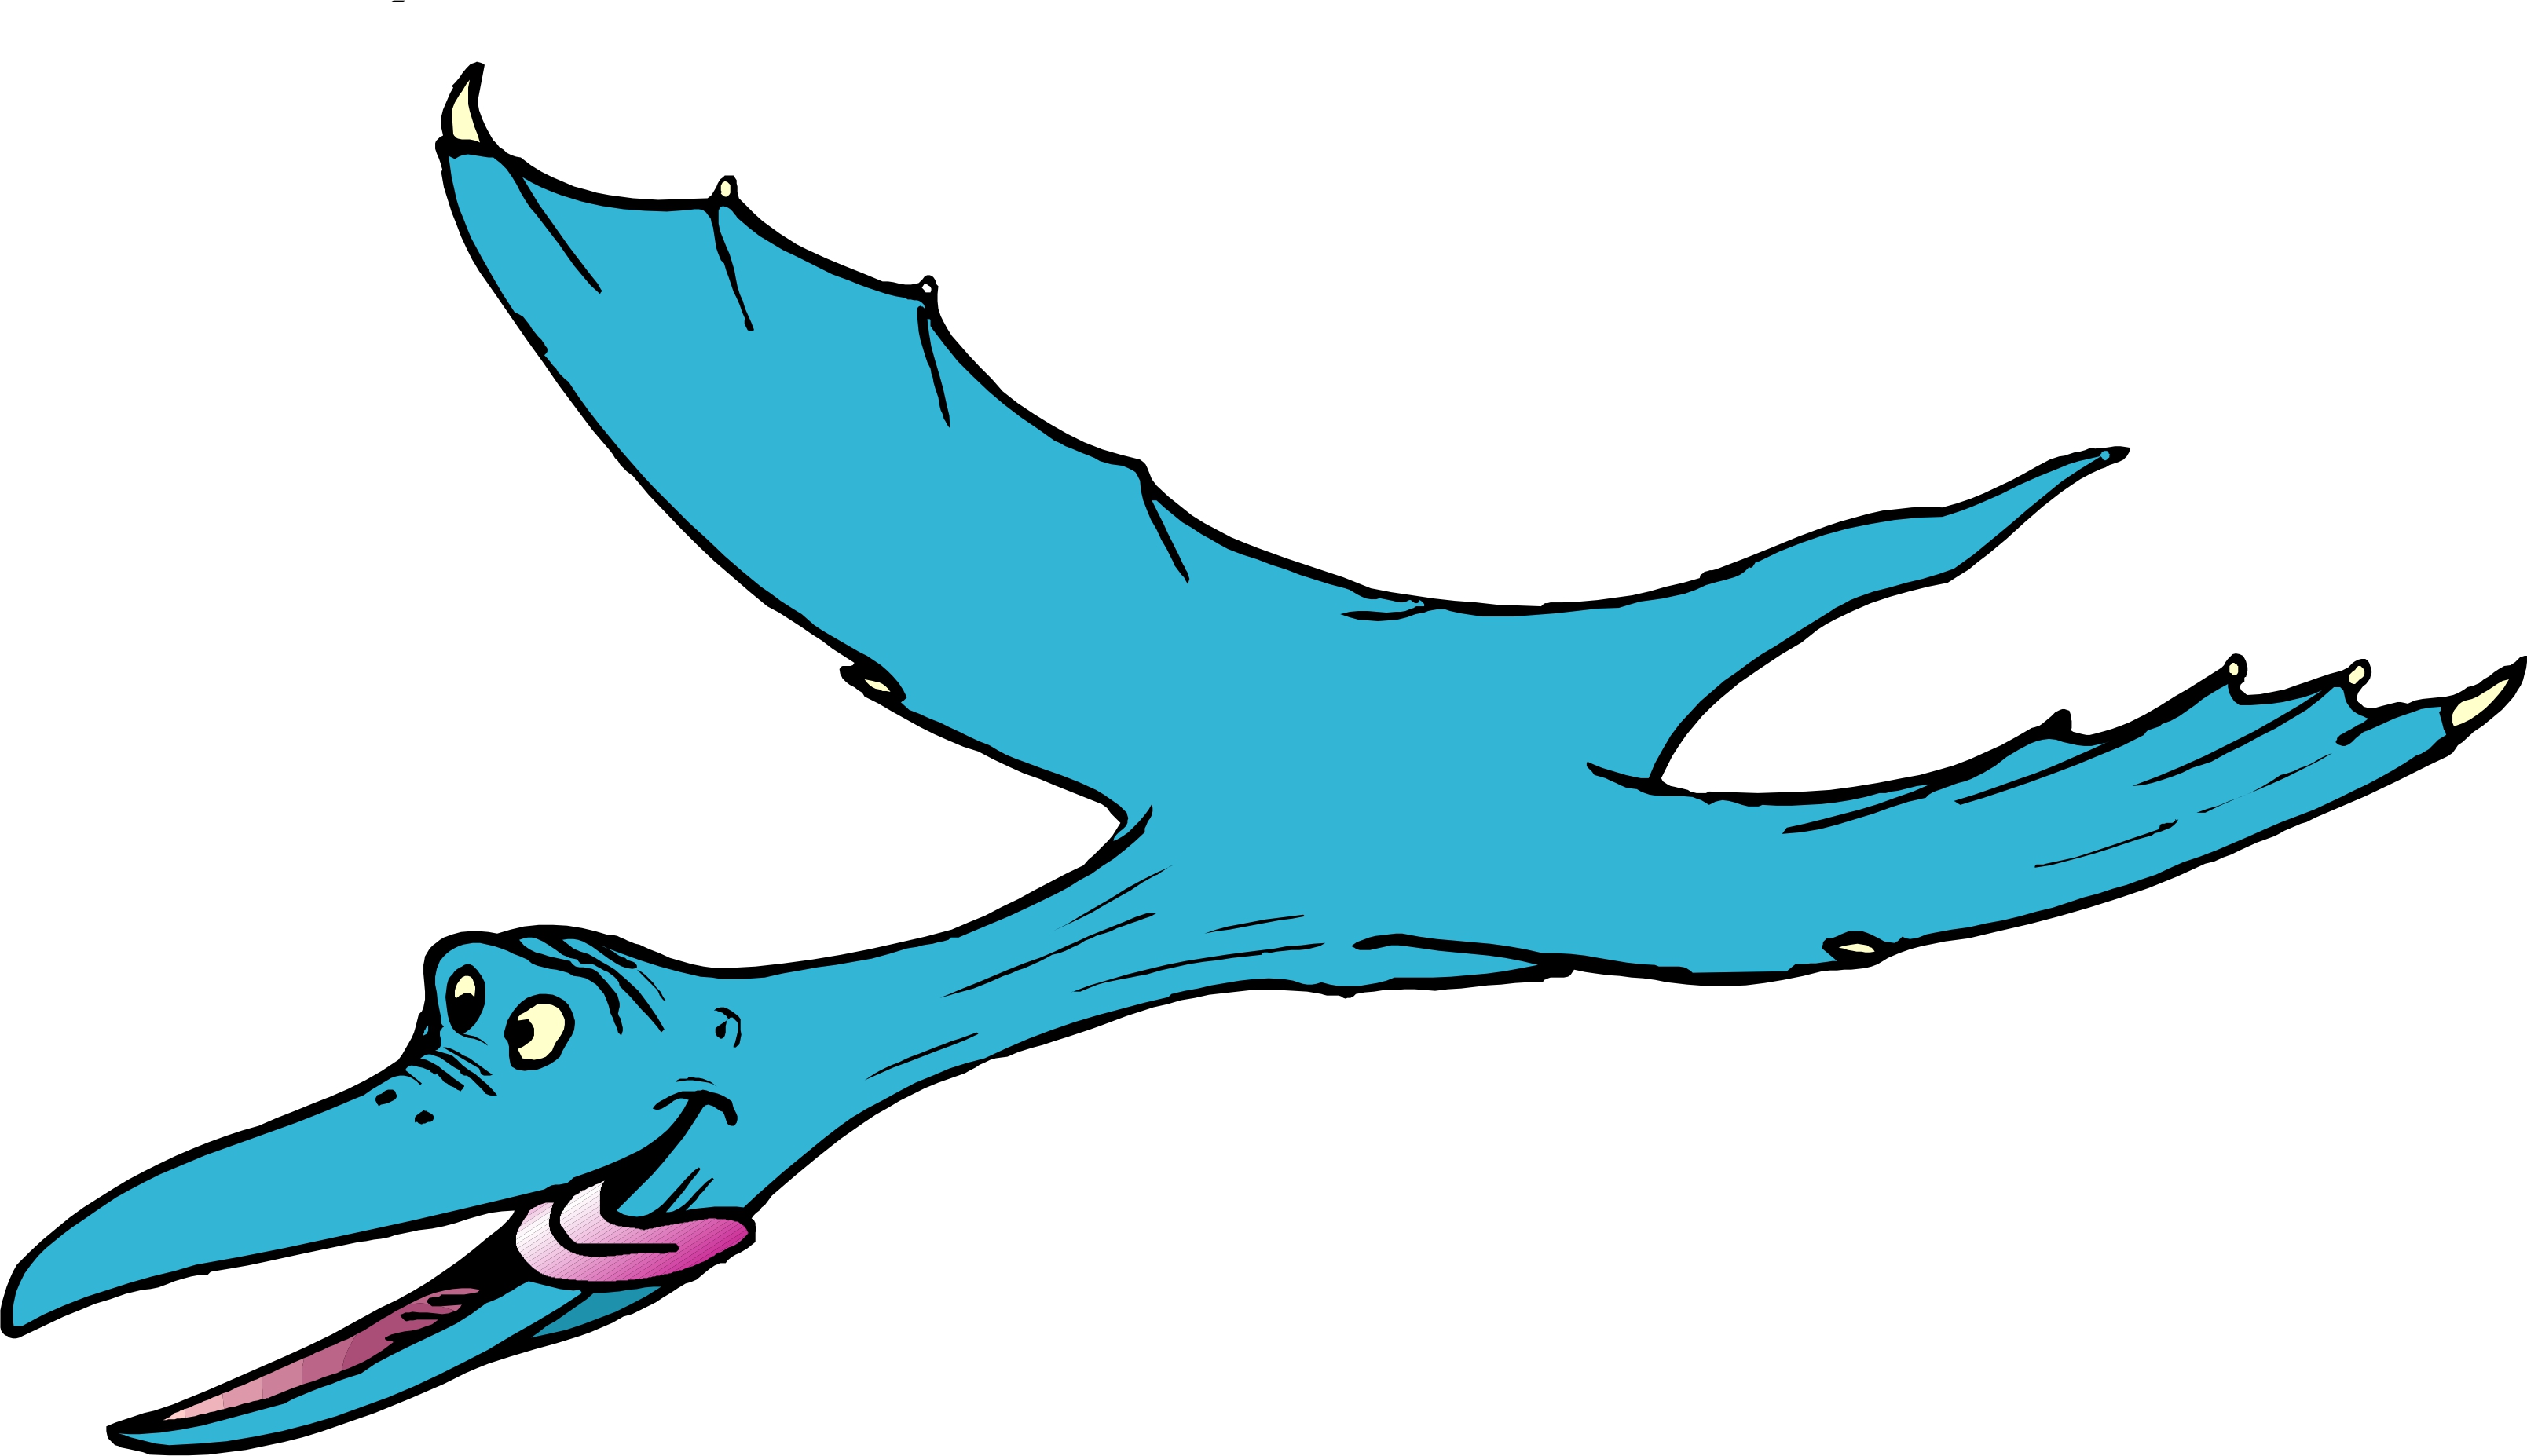 Dinosaur Cartoon Image 